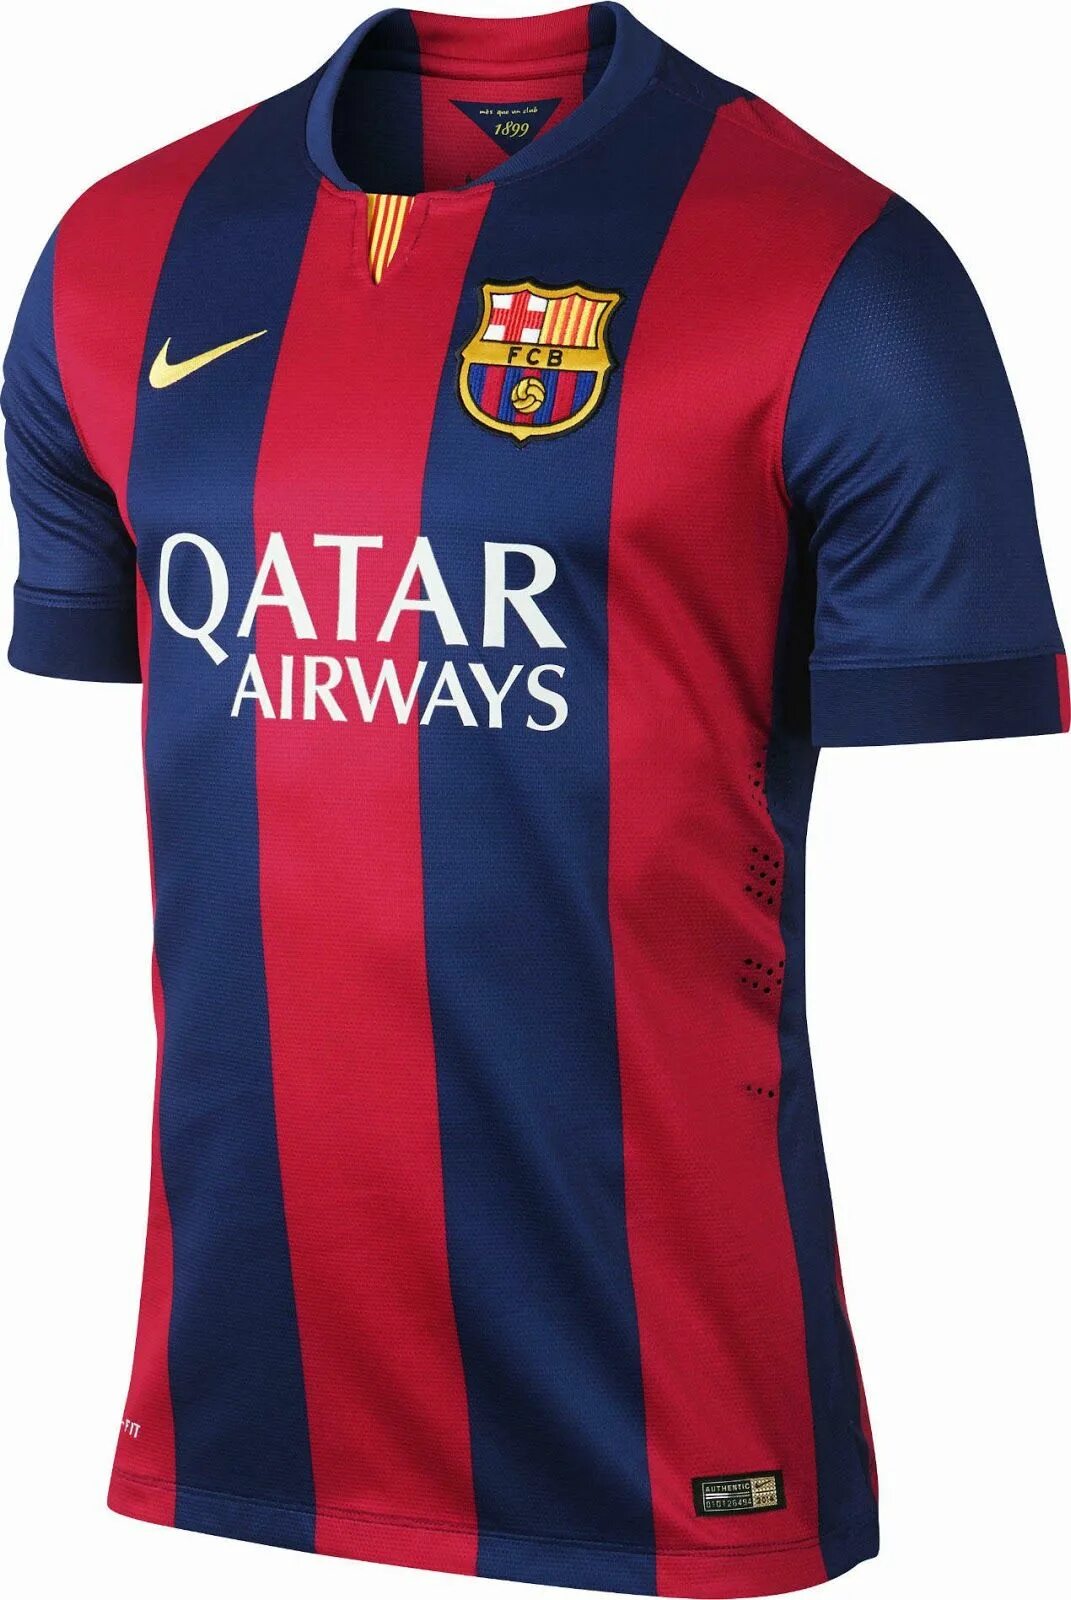 Барселона 14-15 forma. Форма Барселоны 2014-2015. Barca Kit 2014/15. Форма Барселоны 2014-15.